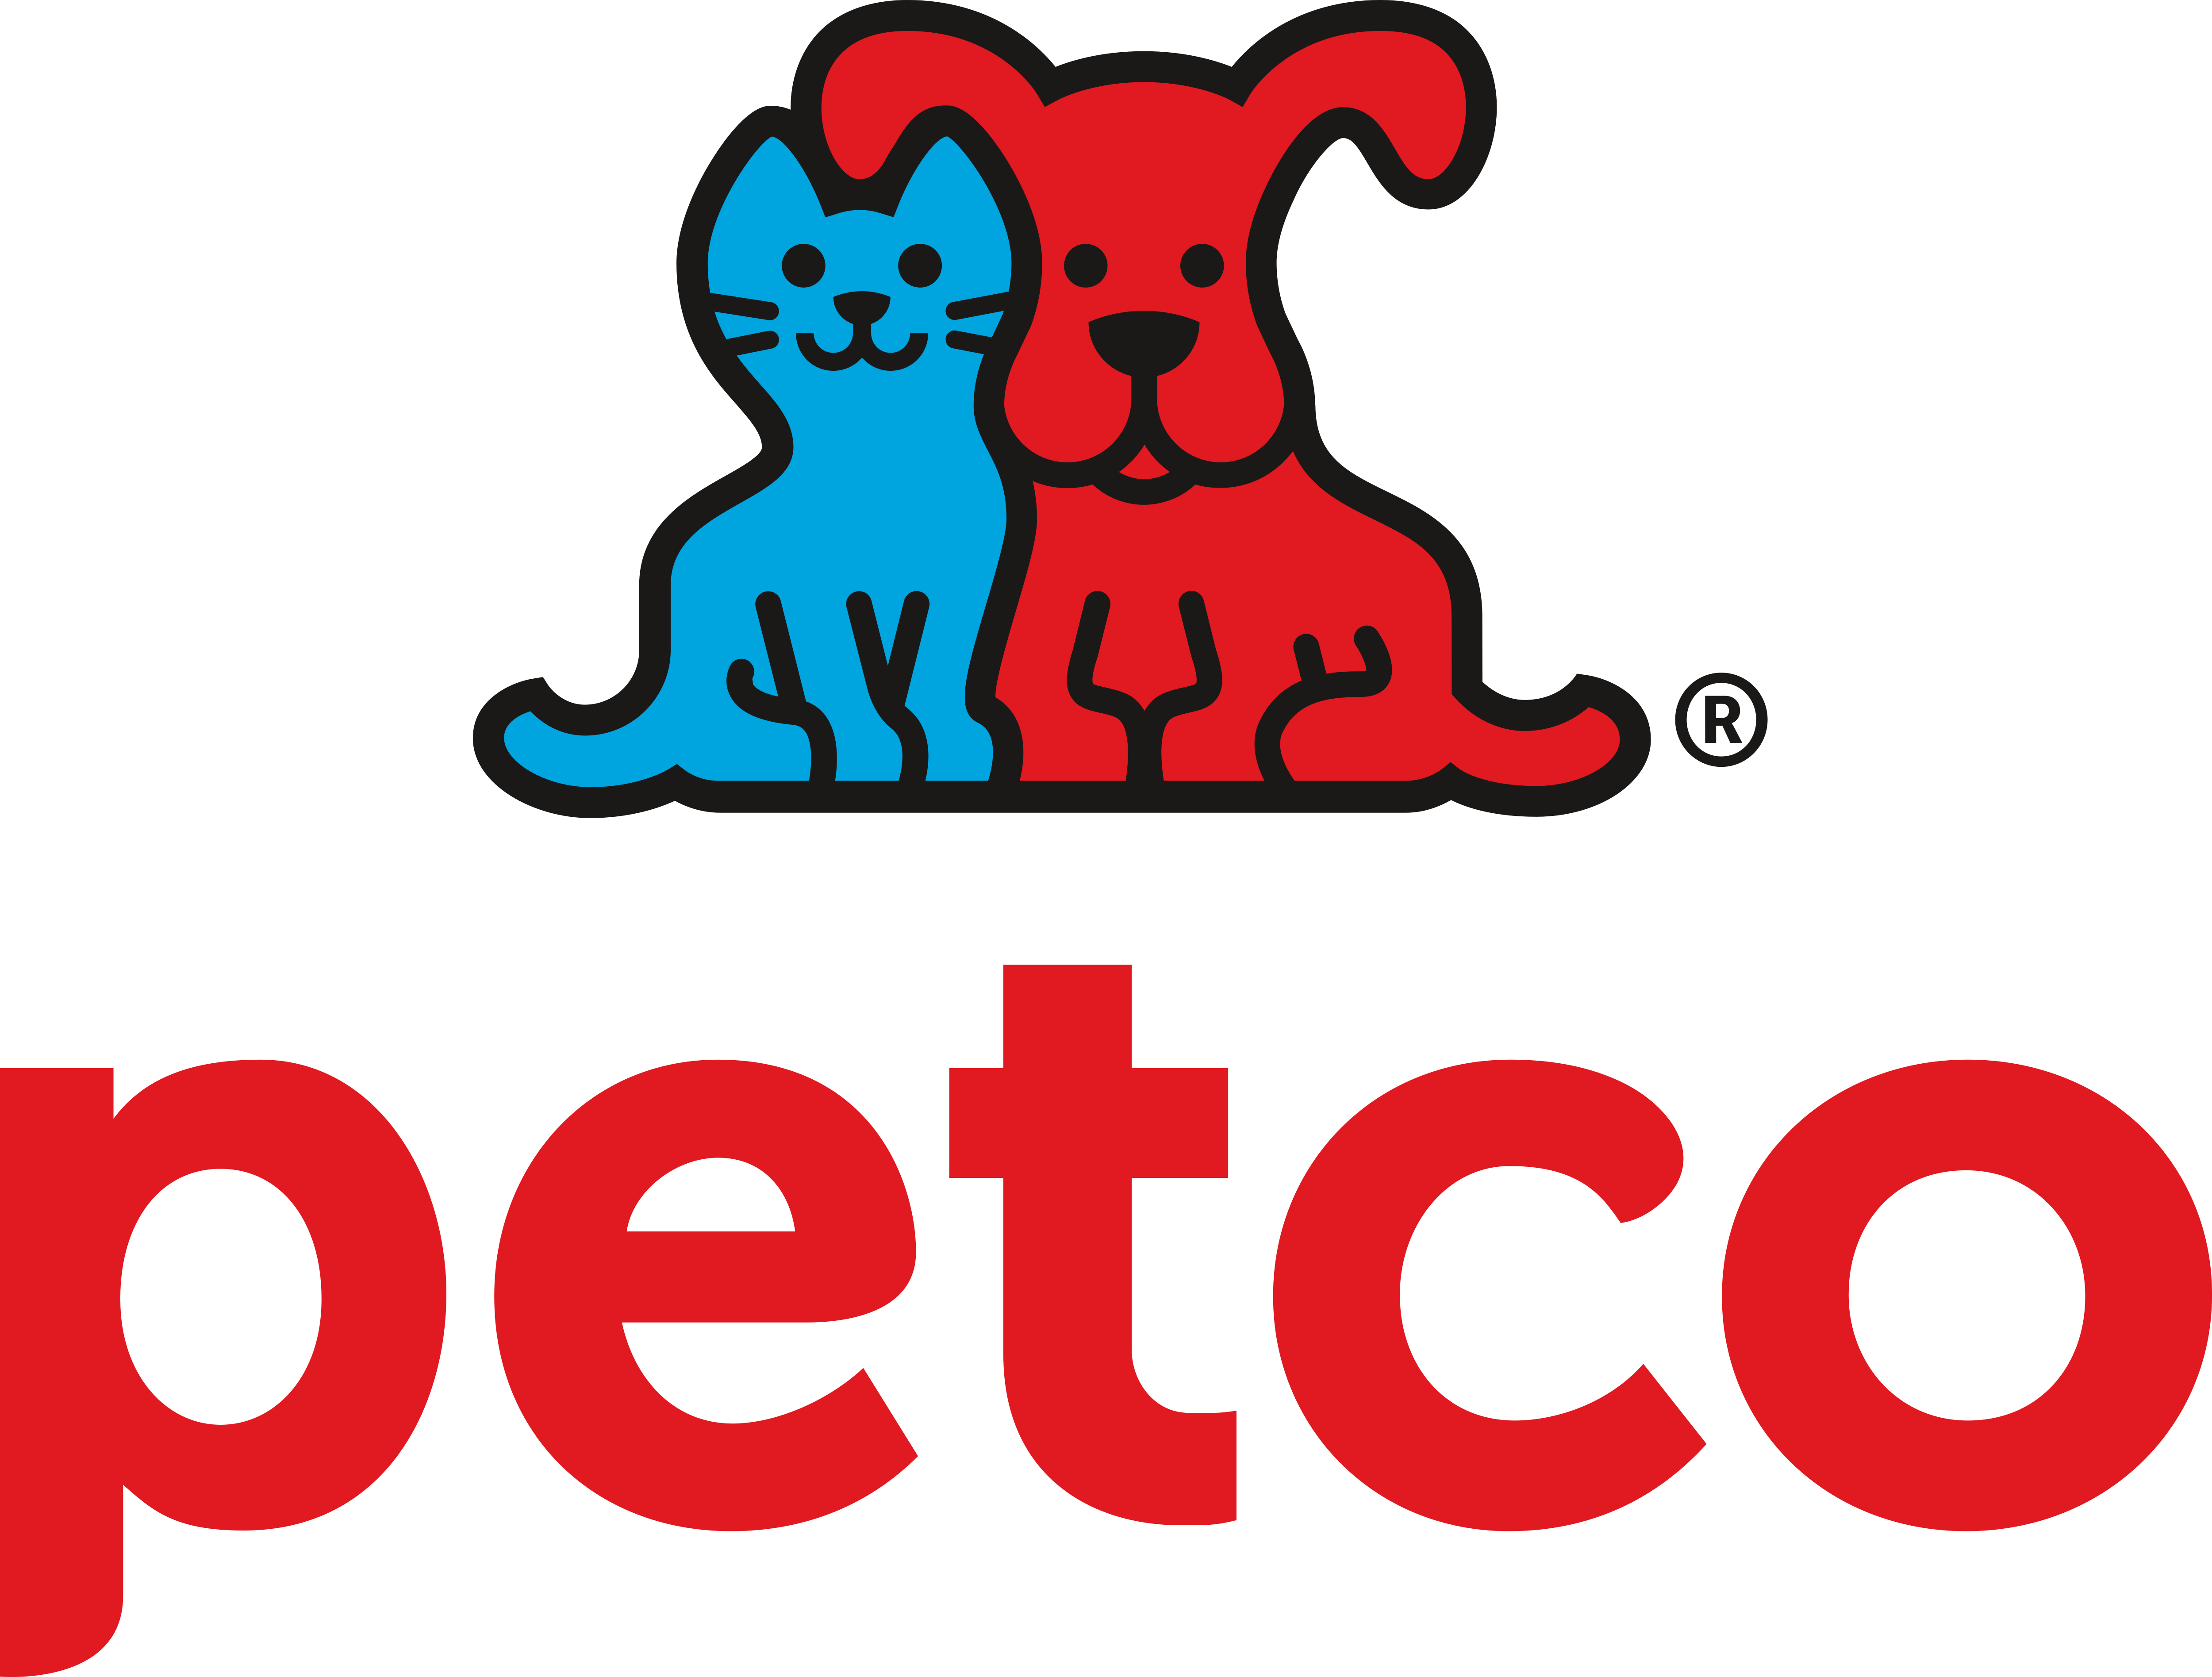 Petco.com